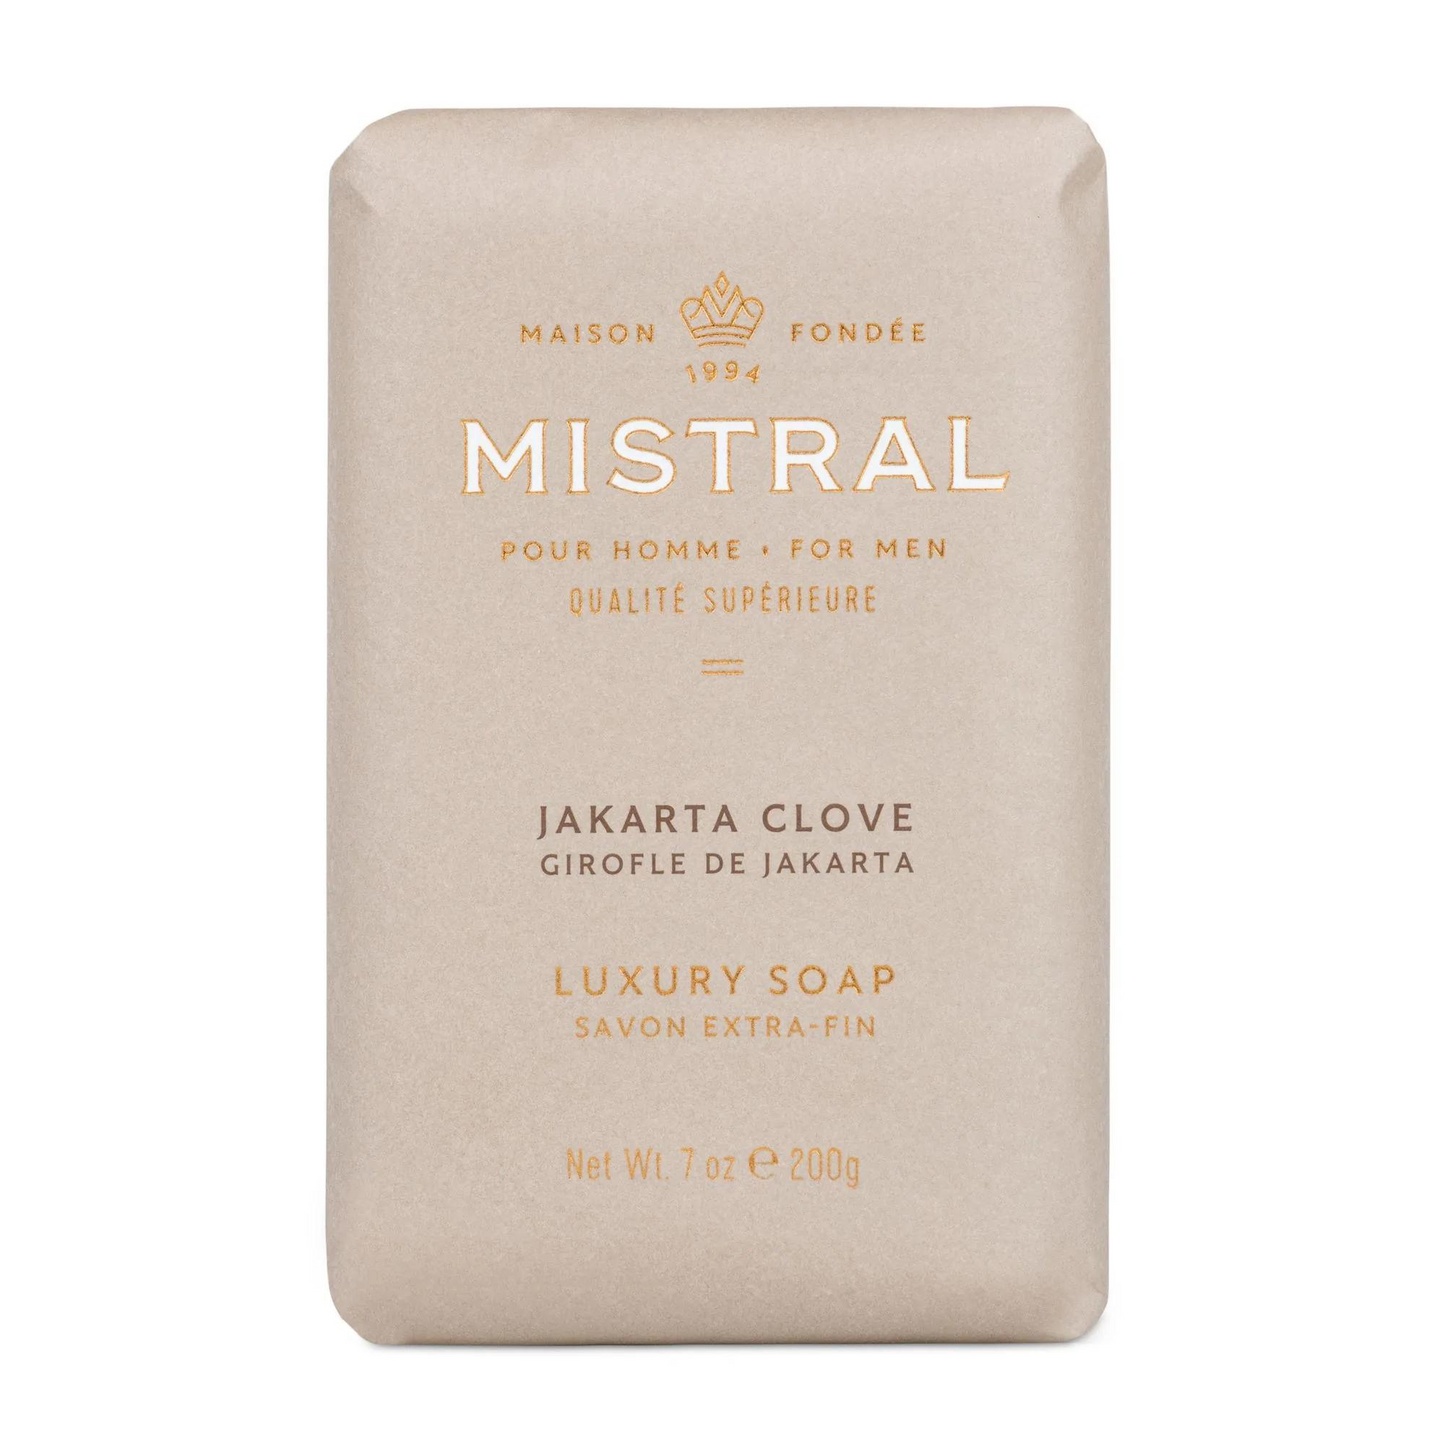 Primary Image of Mistral Jakarta Clove Bar Soap (7 oz) 